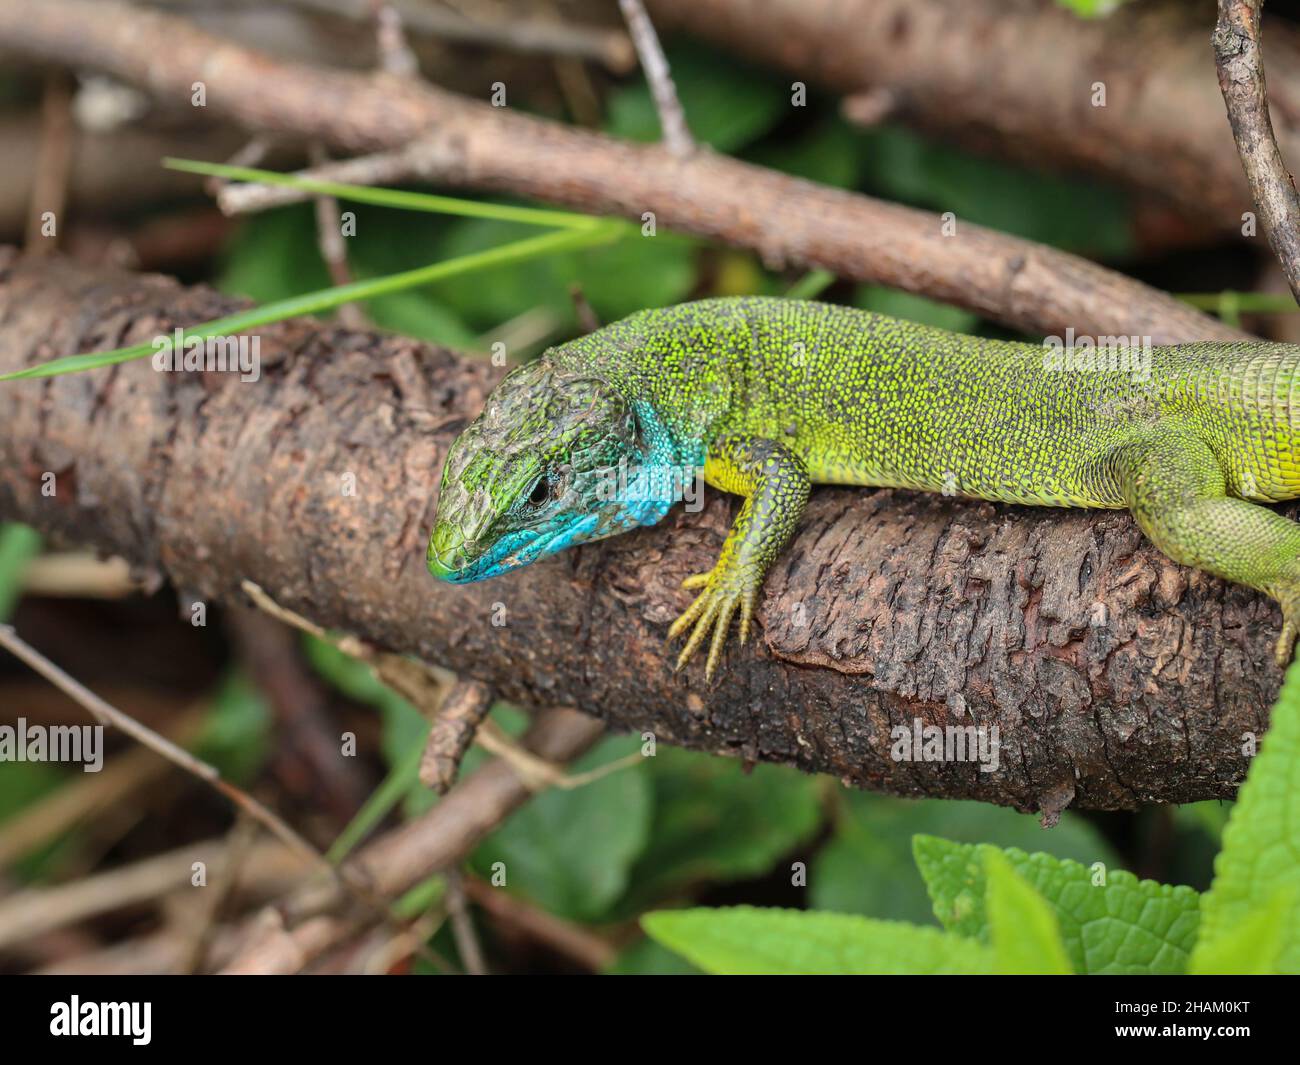 Erwachsenes Männchen der europäischen grünen Eidechse, Lacerta viridis mit blauer Kehle Stockfoto